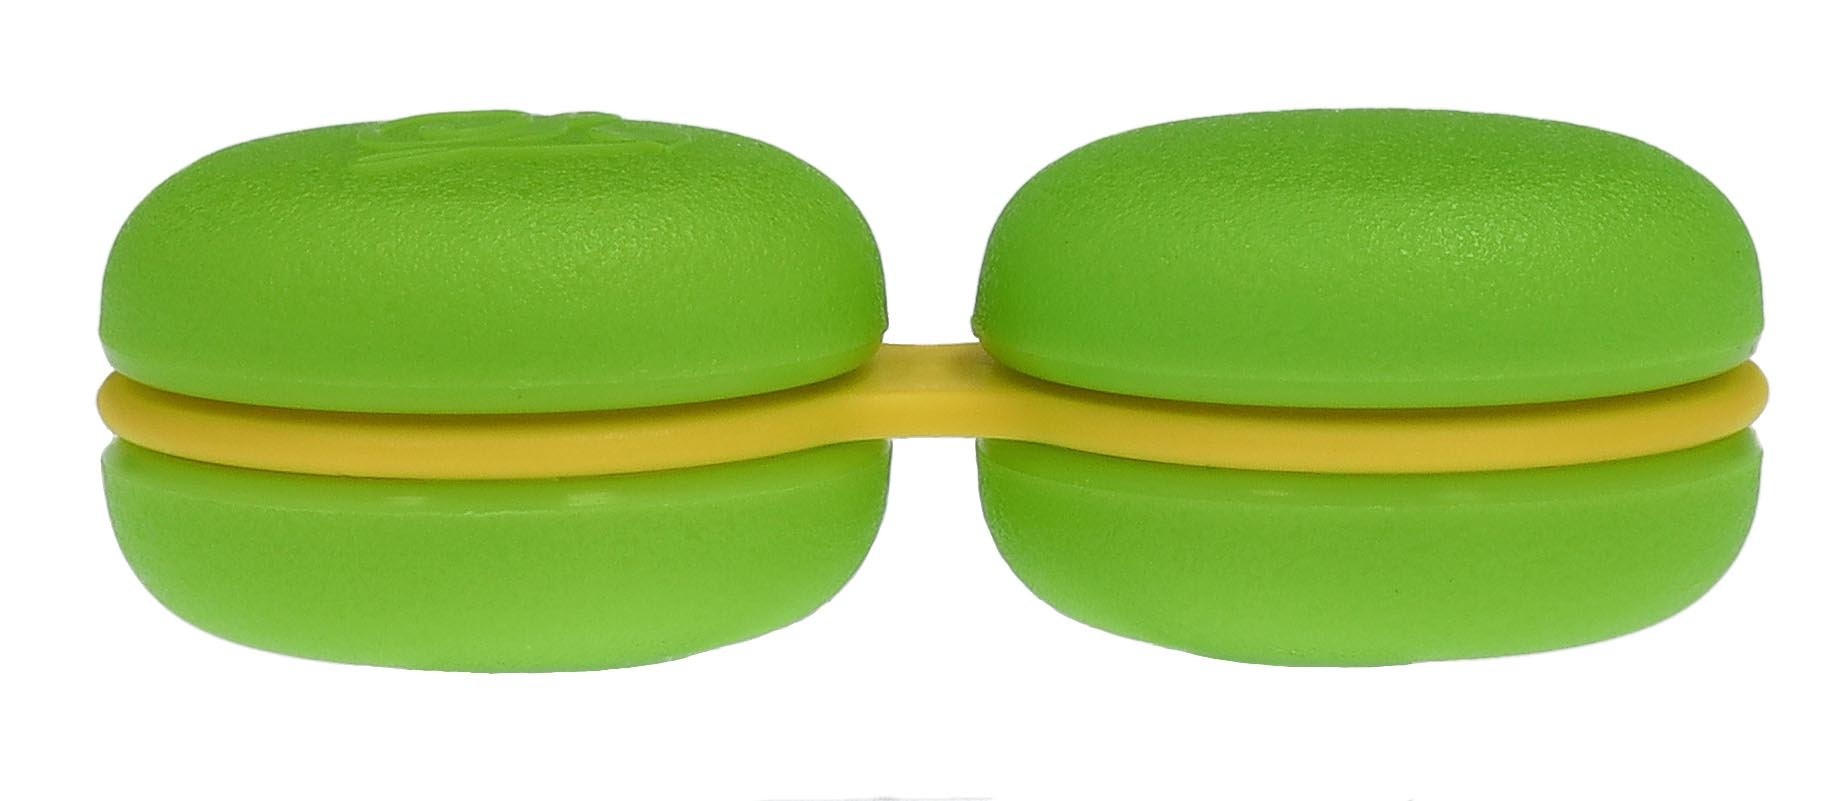 Kontaktlinsenbehälter flach in grün / gelb